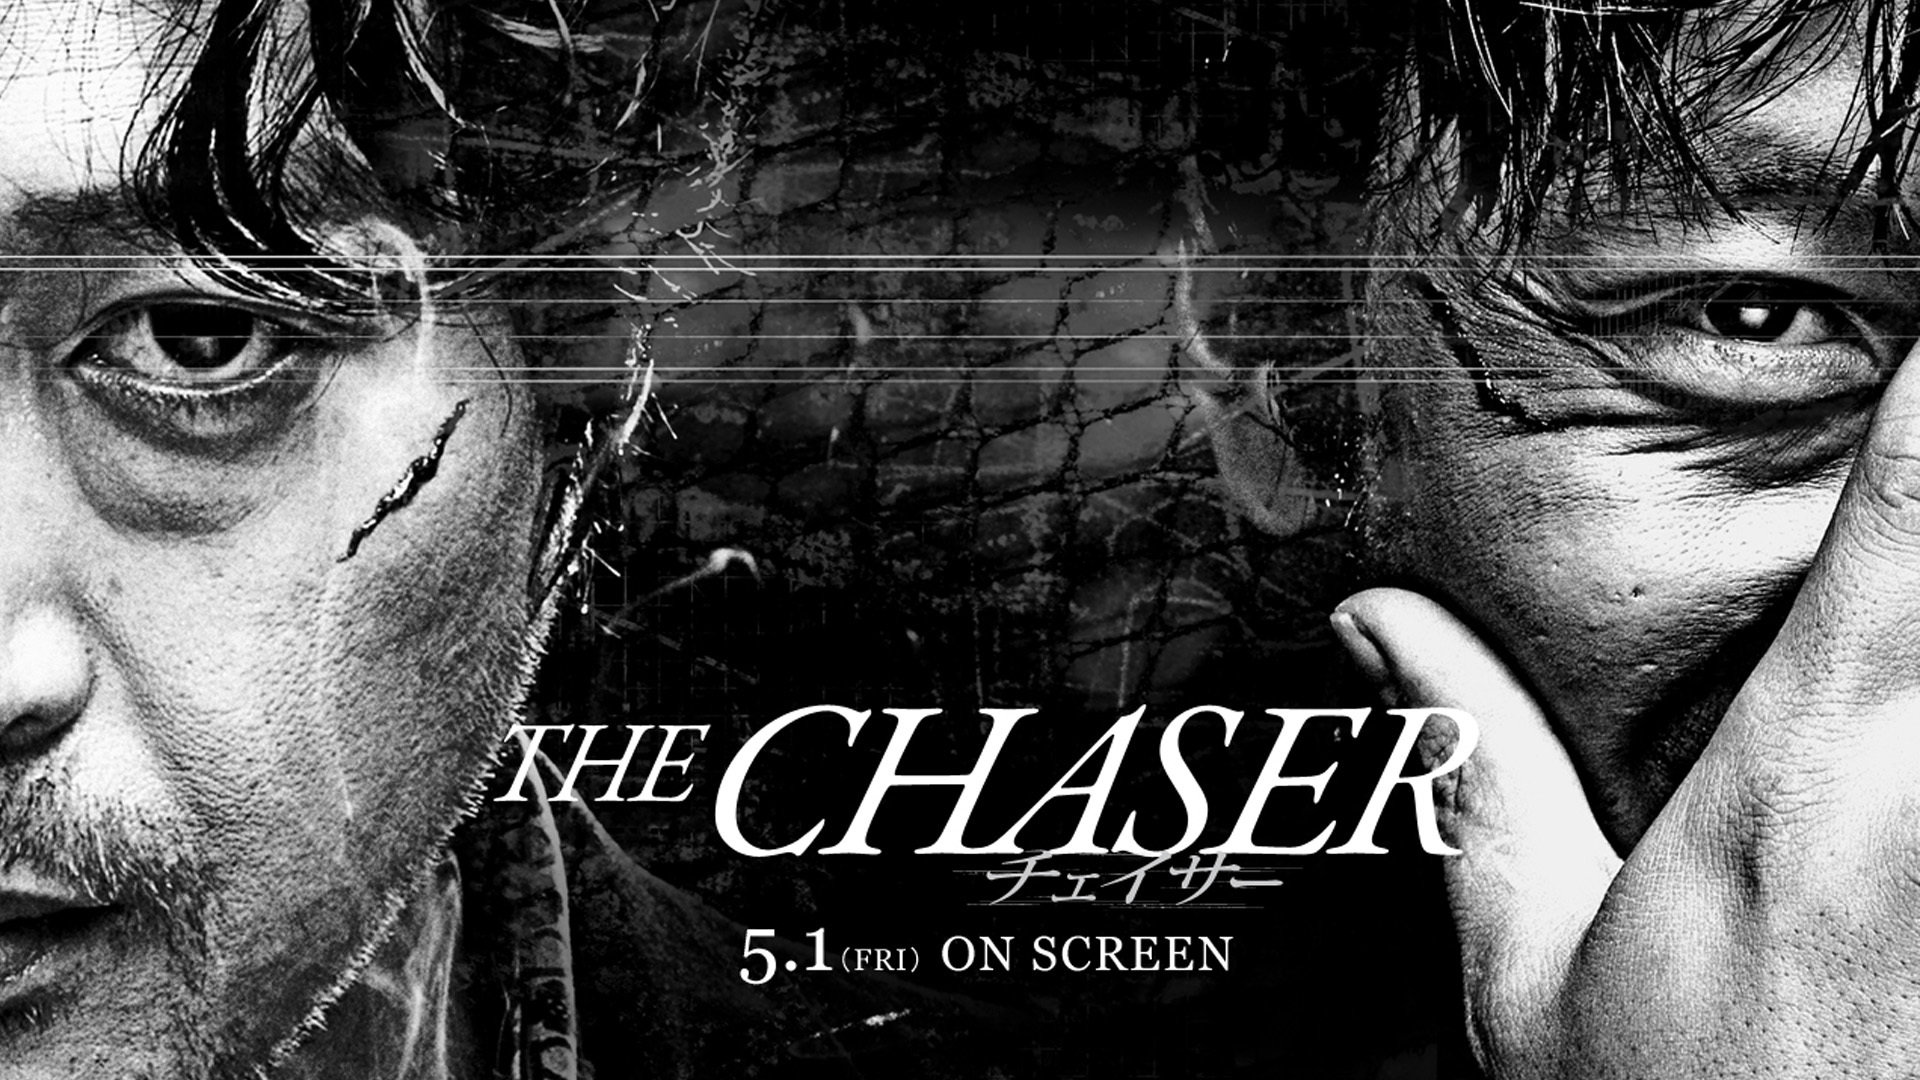 追击者 the chaser 韩国                            |韩语